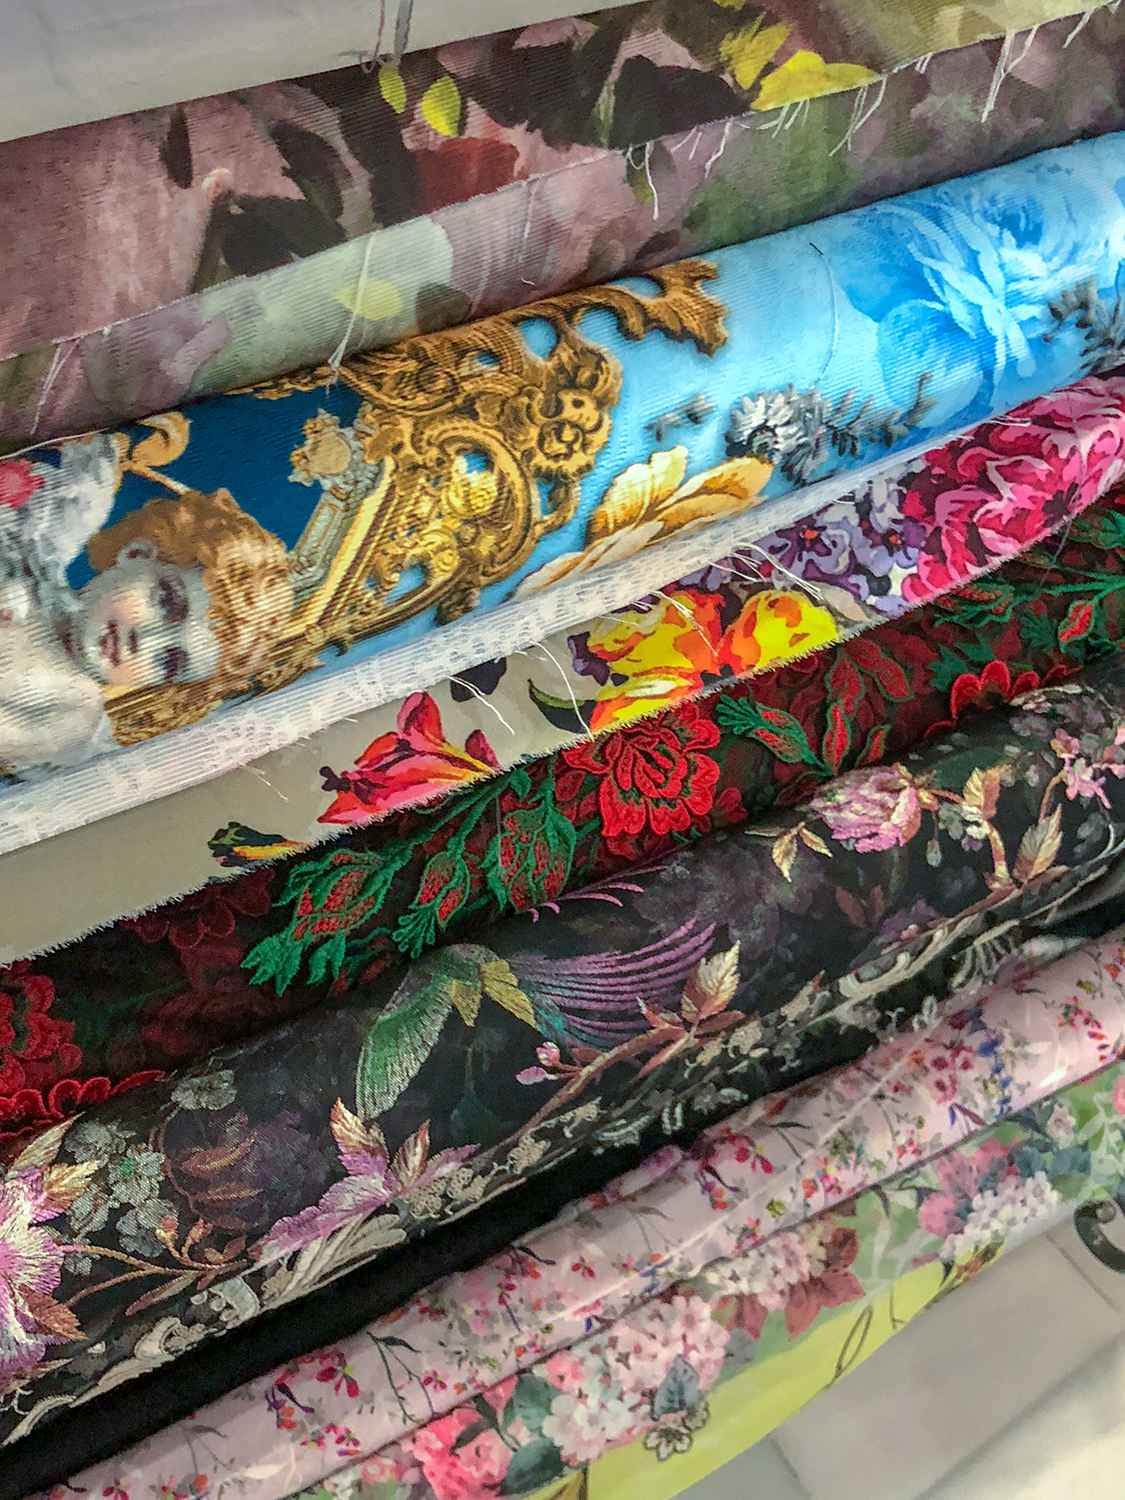 Fabric Shopping in Seville's City Center - The Serial Hobbyist Girl